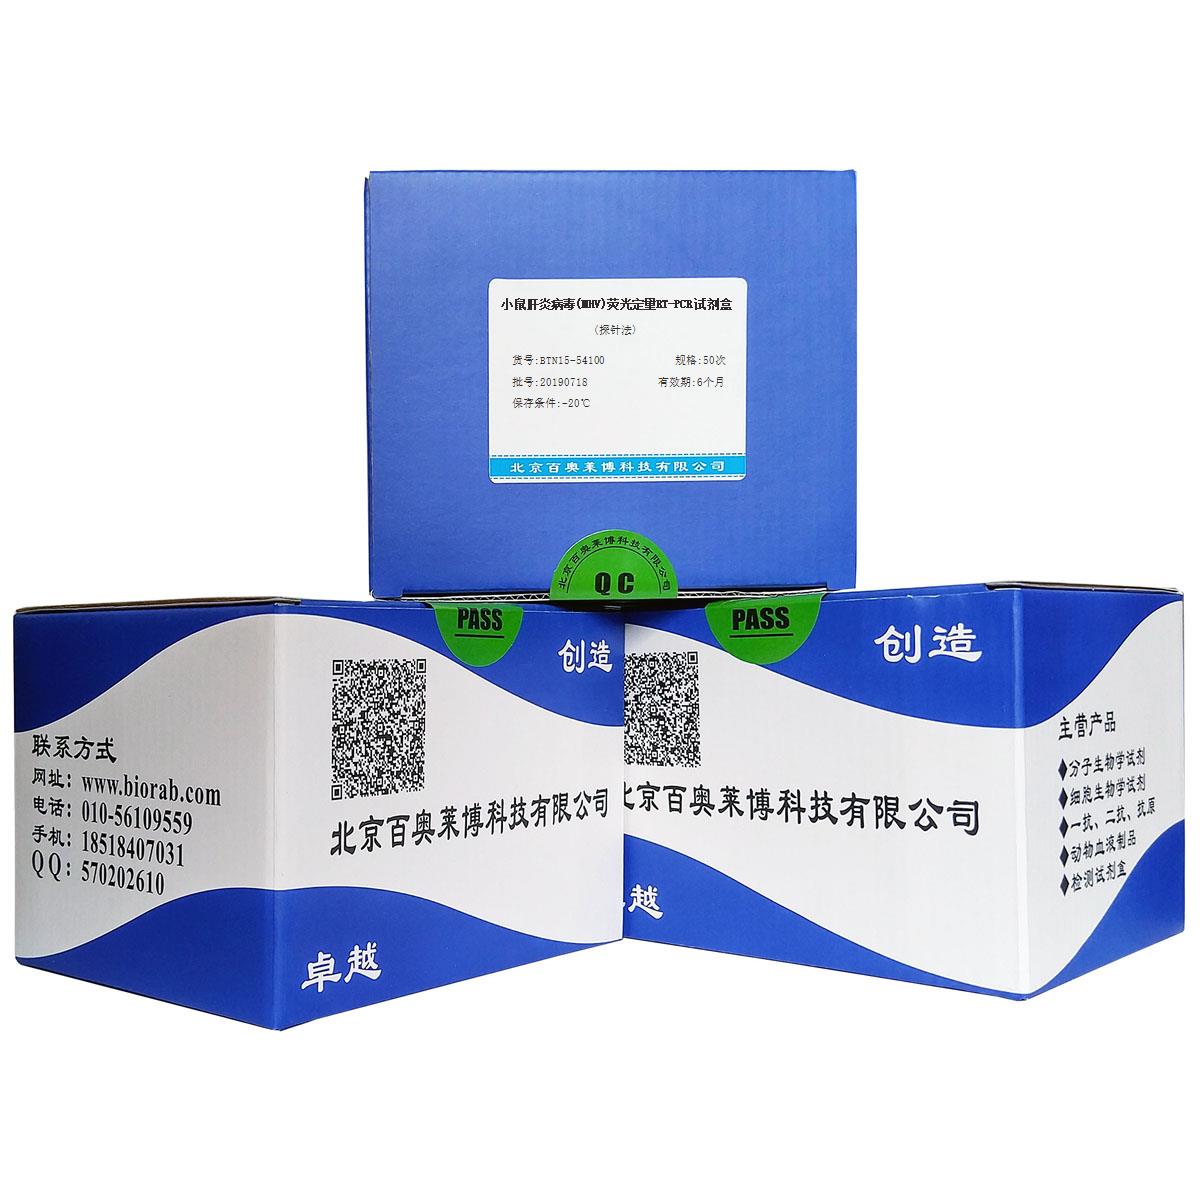 小鼠肝炎病毒(MHV)荧光定量RT-PCR试剂盒(探针法)